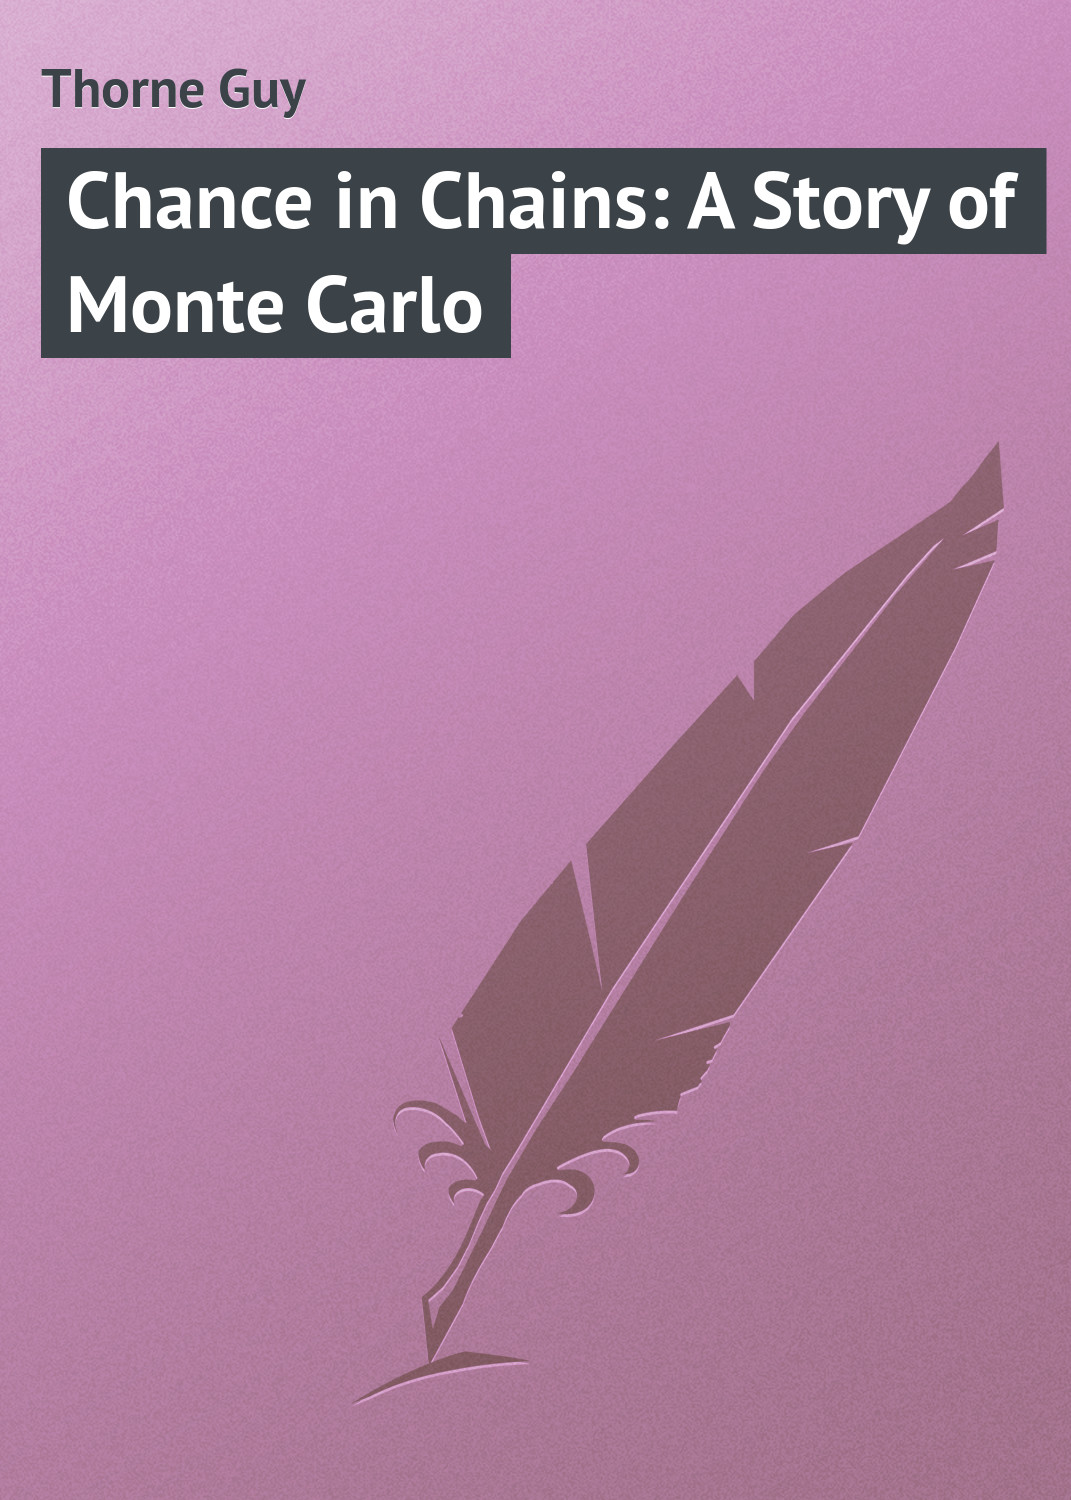 Книга Chance in Chains: A Story of Monte Carlo из серии , созданная Guy Thorne, может относится к жанру Зарубежная классика. Стоимость электронной книги Chance in Chains: A Story of Monte Carlo с идентификатором 23148251 составляет 5.99 руб.